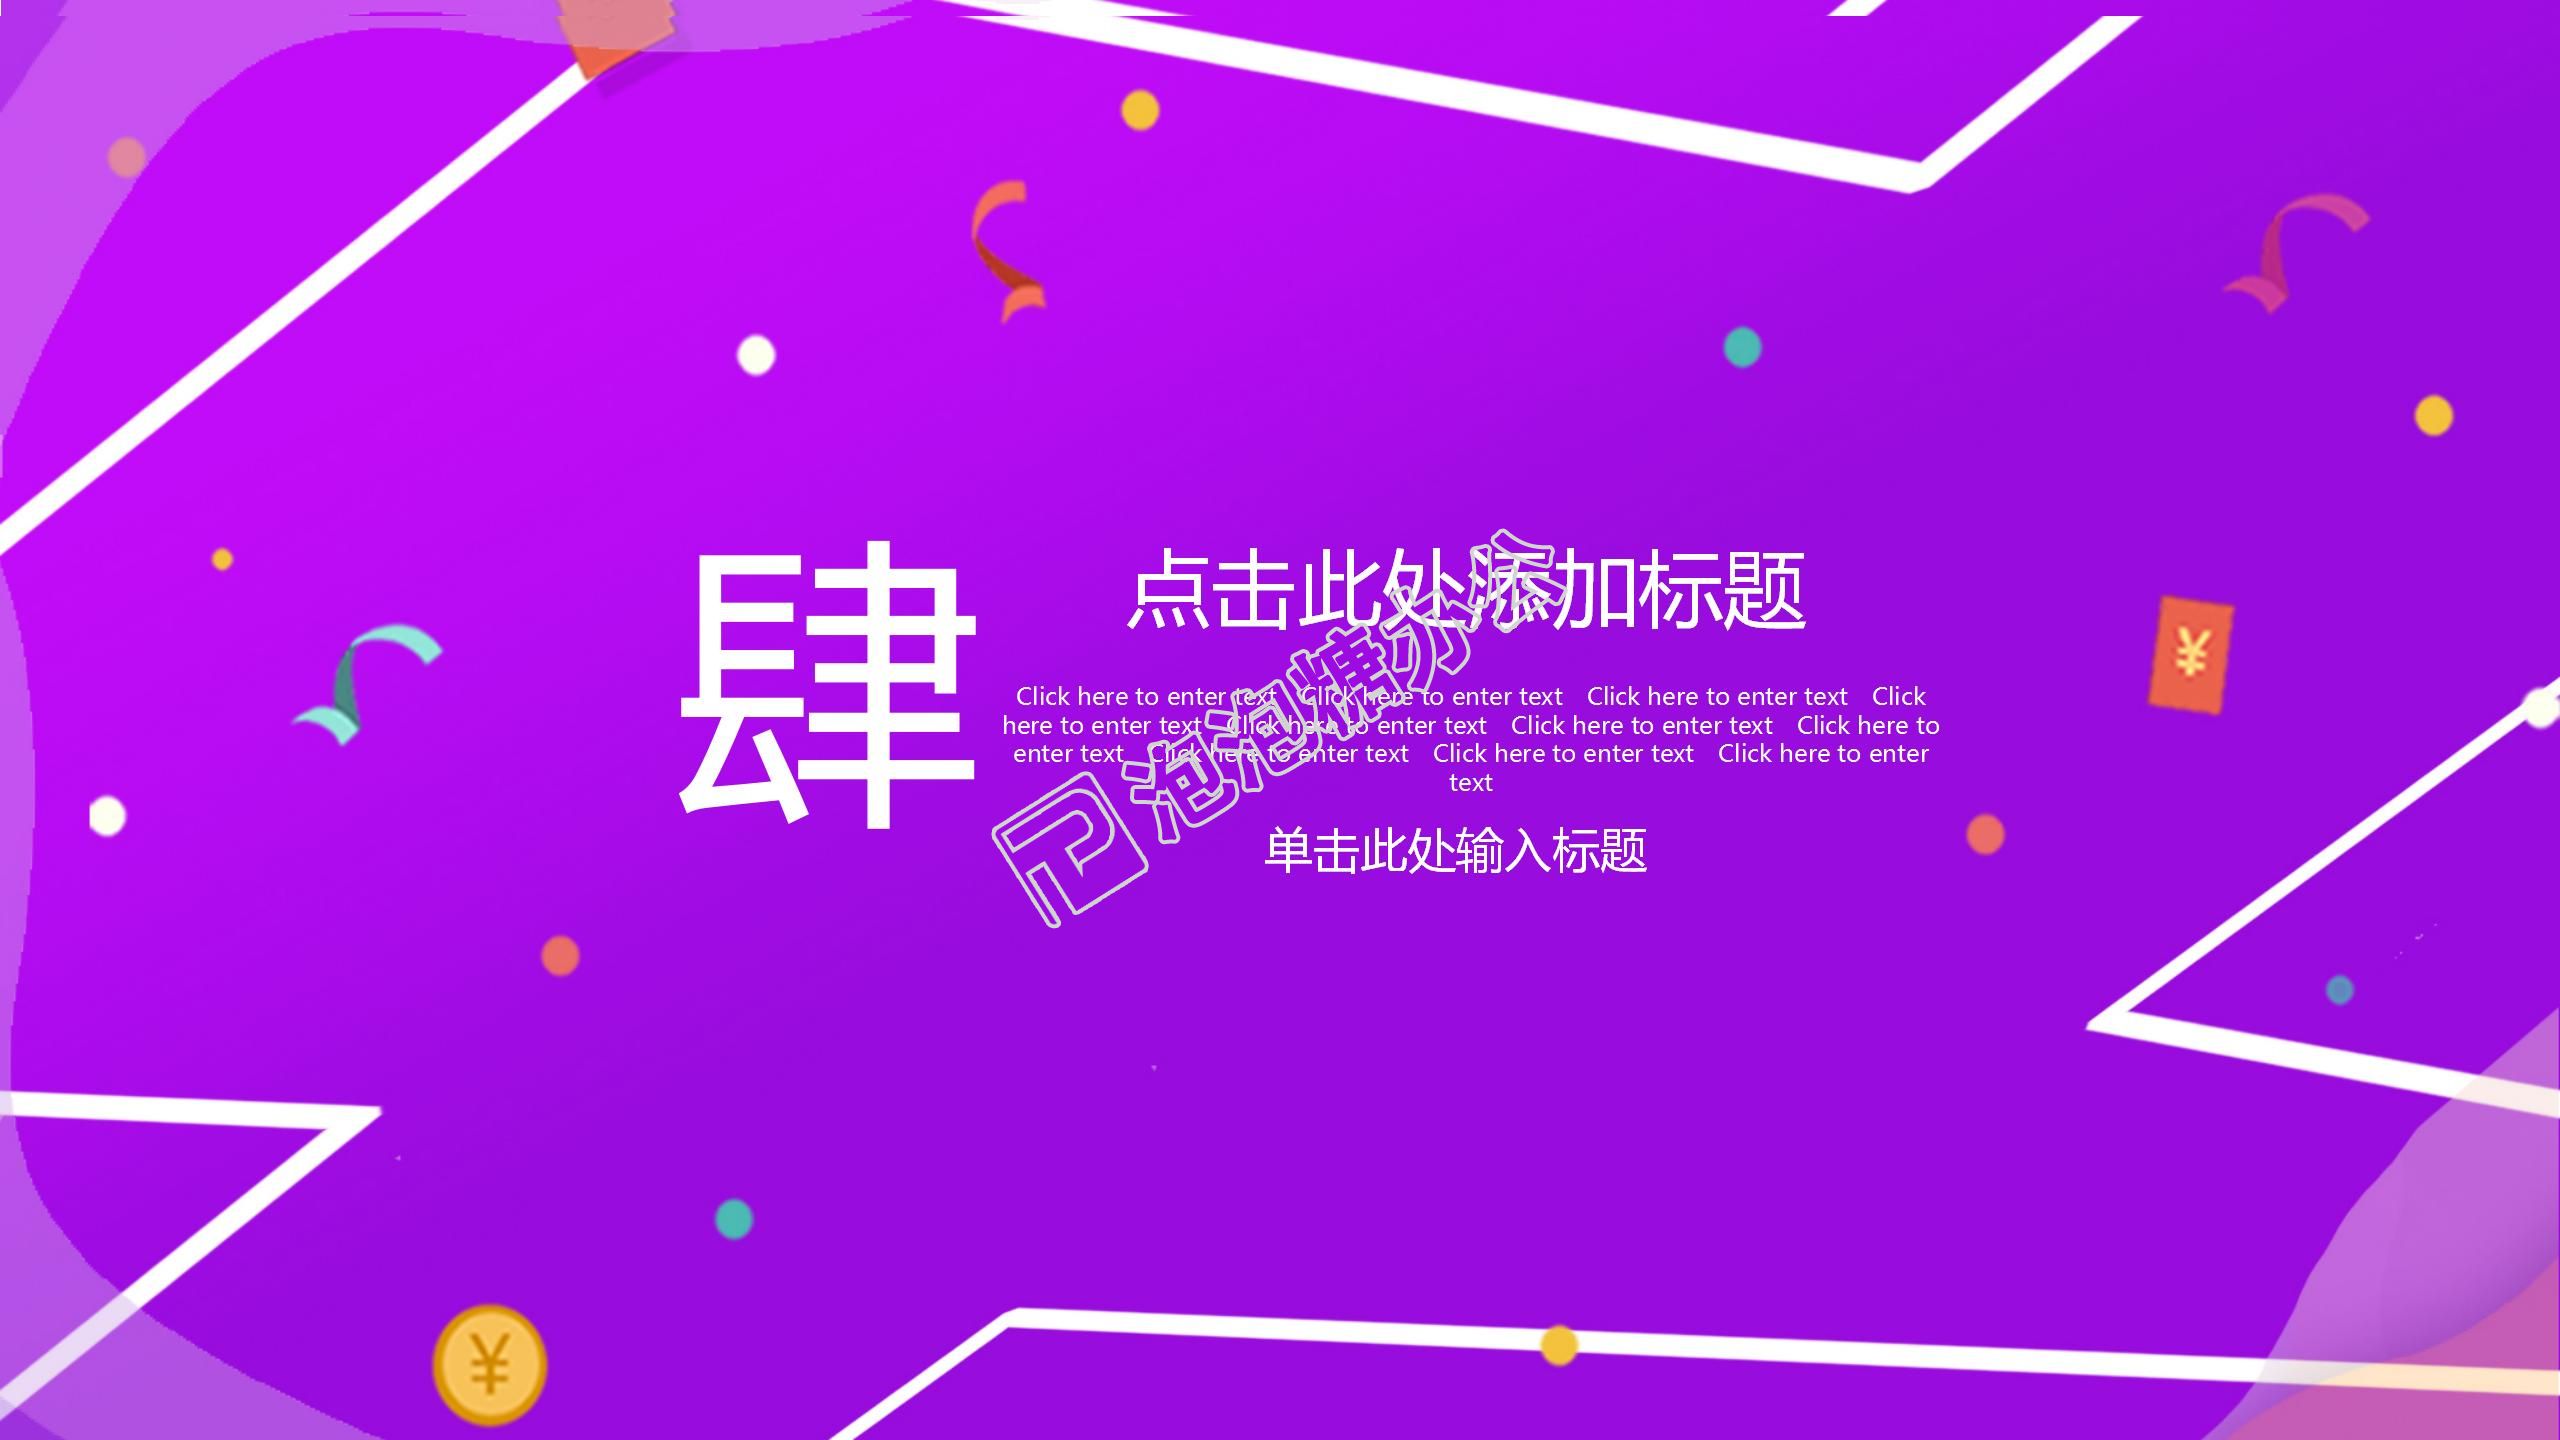 紫色商務618電商狂歡節活動策劃營銷方案宣傳推廣ppt模板